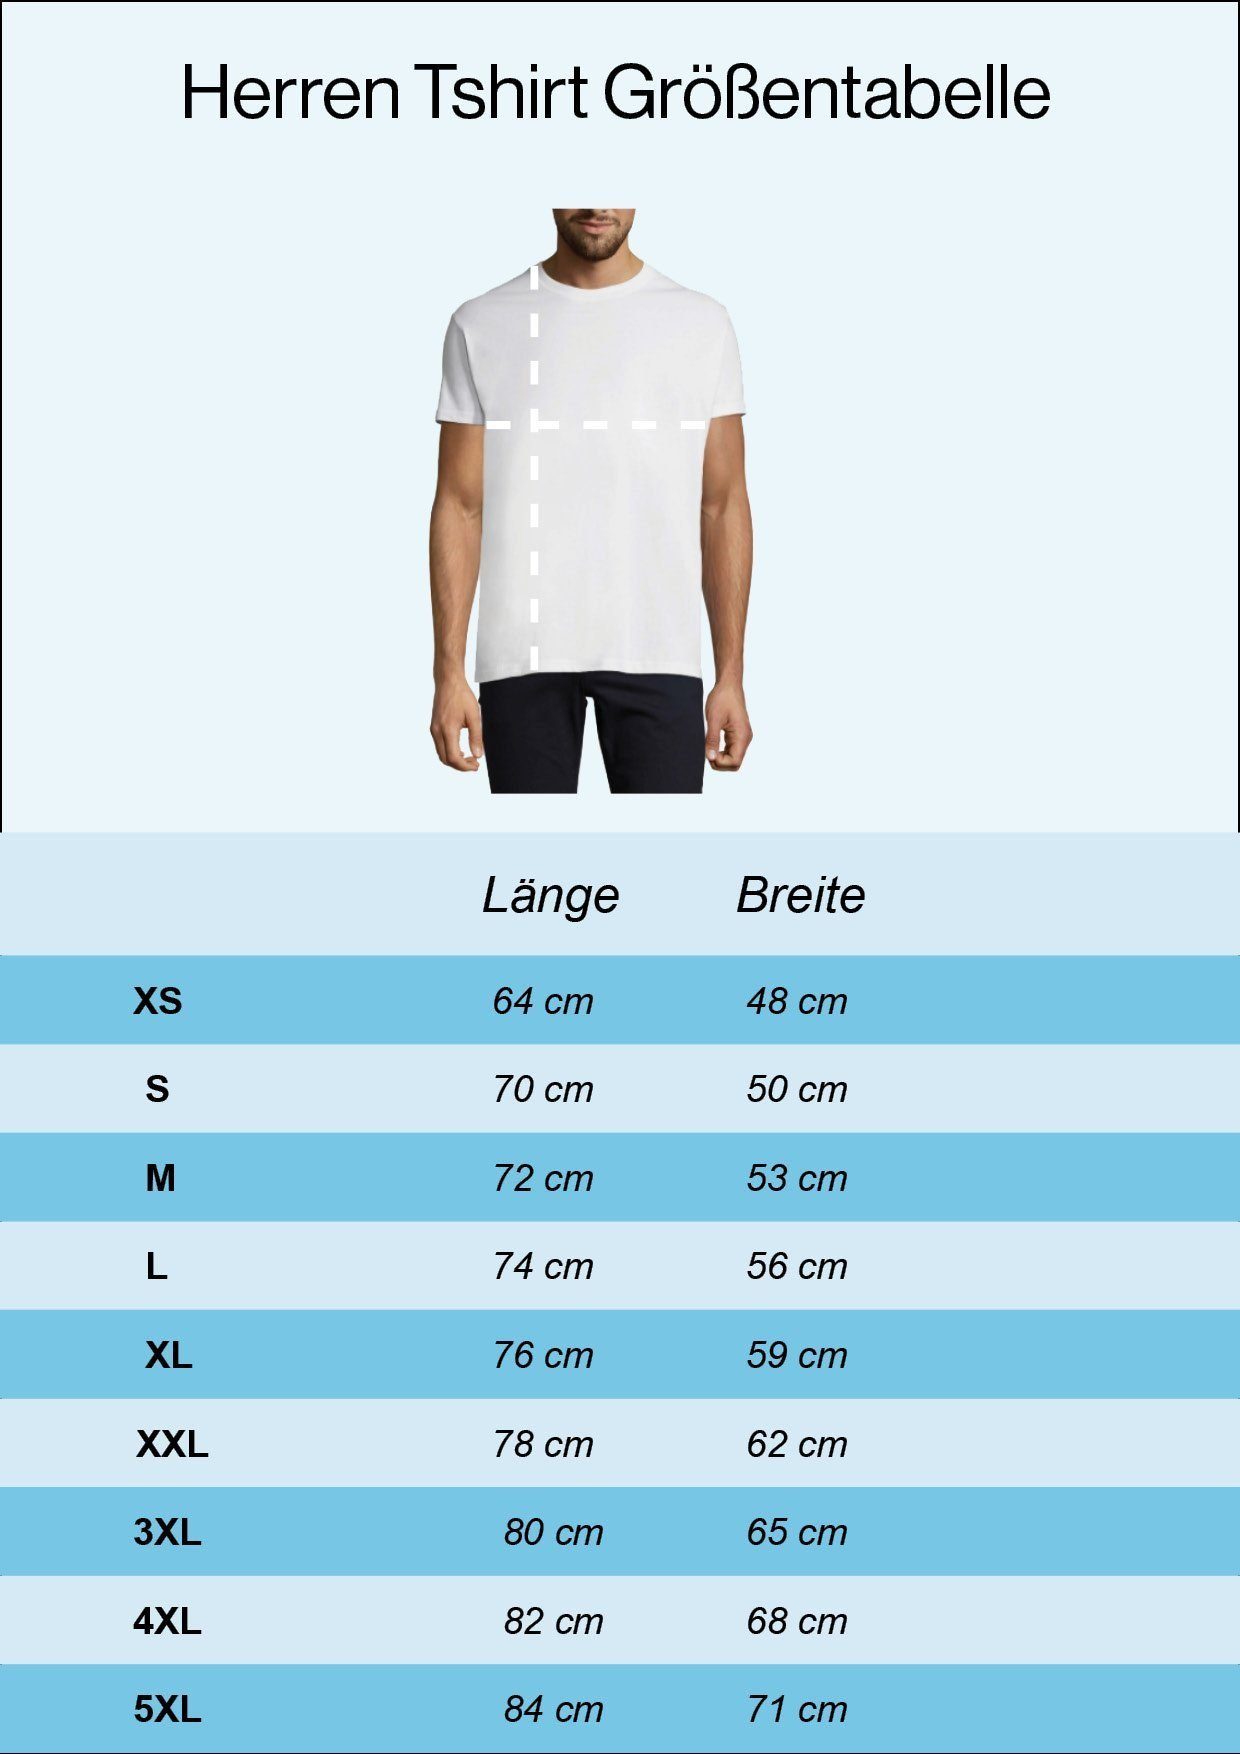 T-shirt mit XO Youth trendigem Frontprint weiss T-Shirt Designz Herren